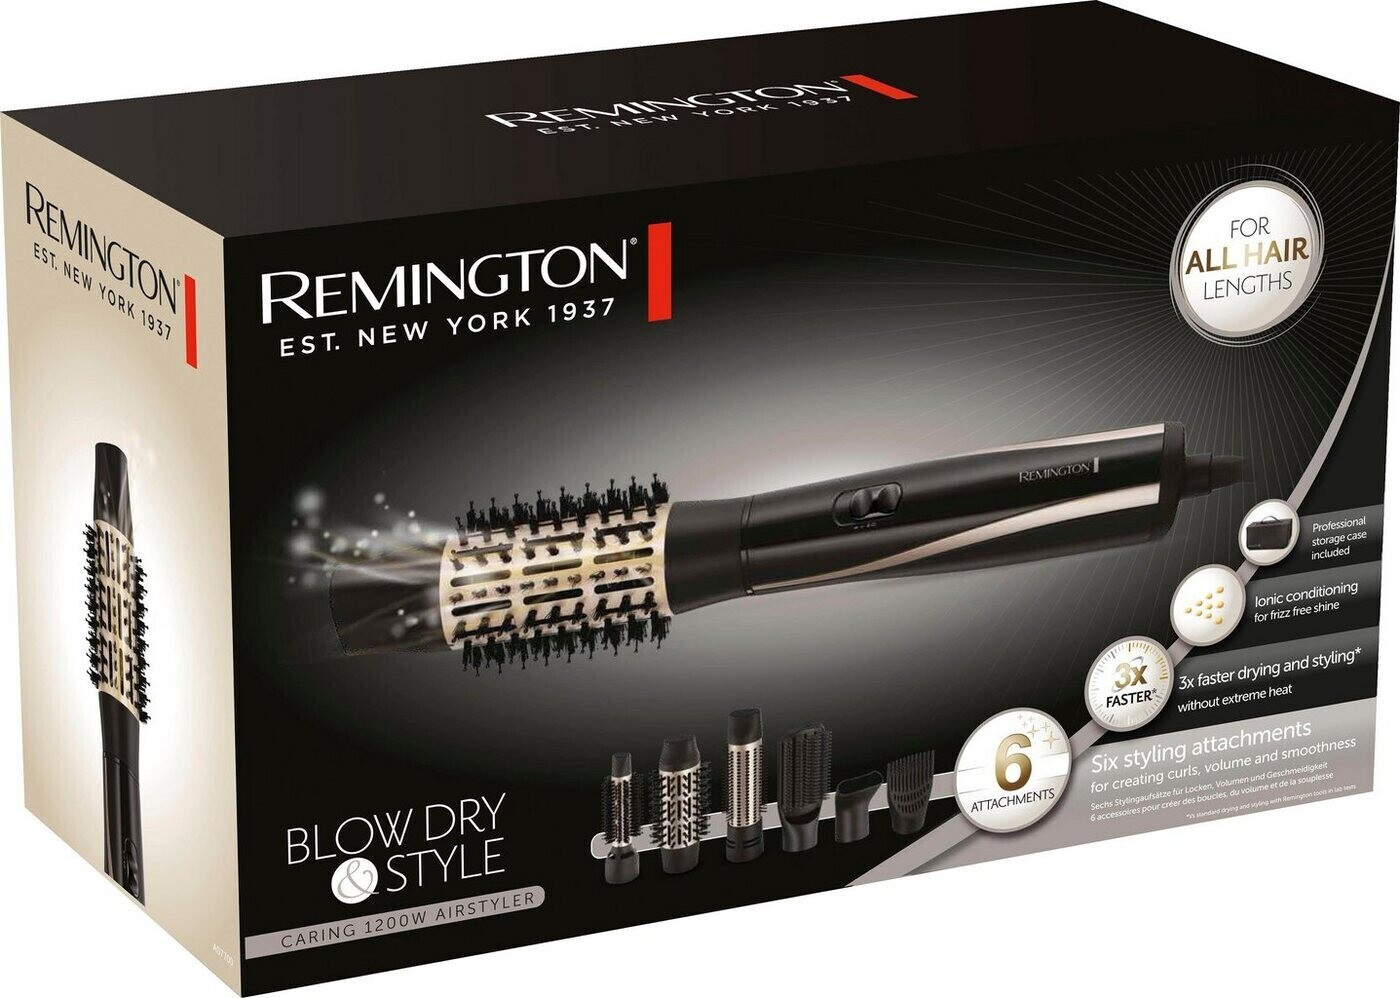 Remington Blow Dry & Preisvergleich € | Style bei AS7700 56,99 ab